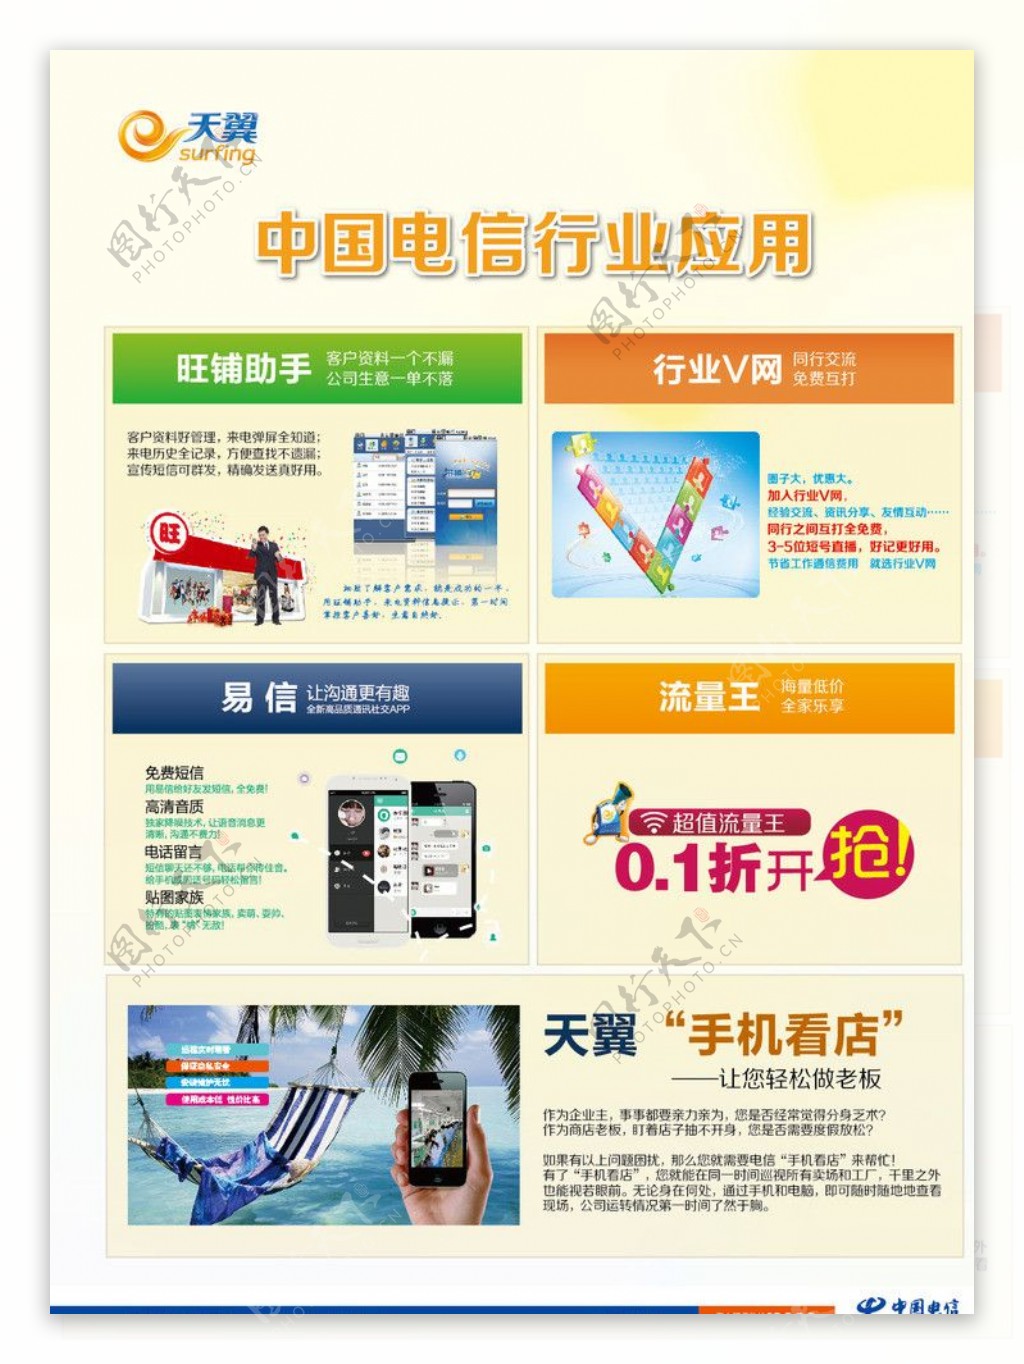 中国电信行业应用图片